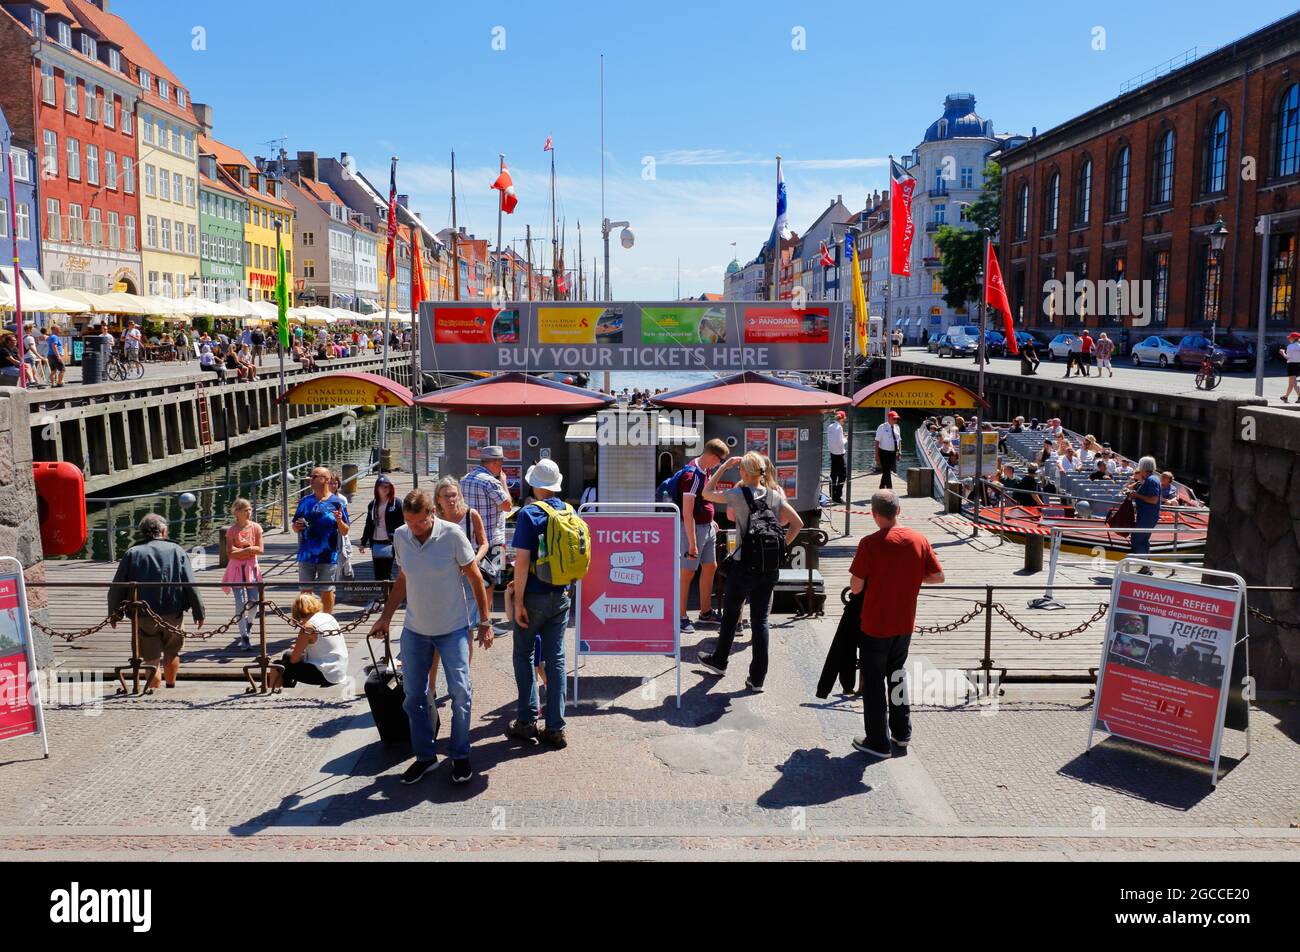 Kopenhagen, Dänemark - 27. Juni 2018: Das Kartenbüro und der Ausgangspunkt für Besichtigungstouren des Stromma-Kanals in Nyhavn. Stockfoto